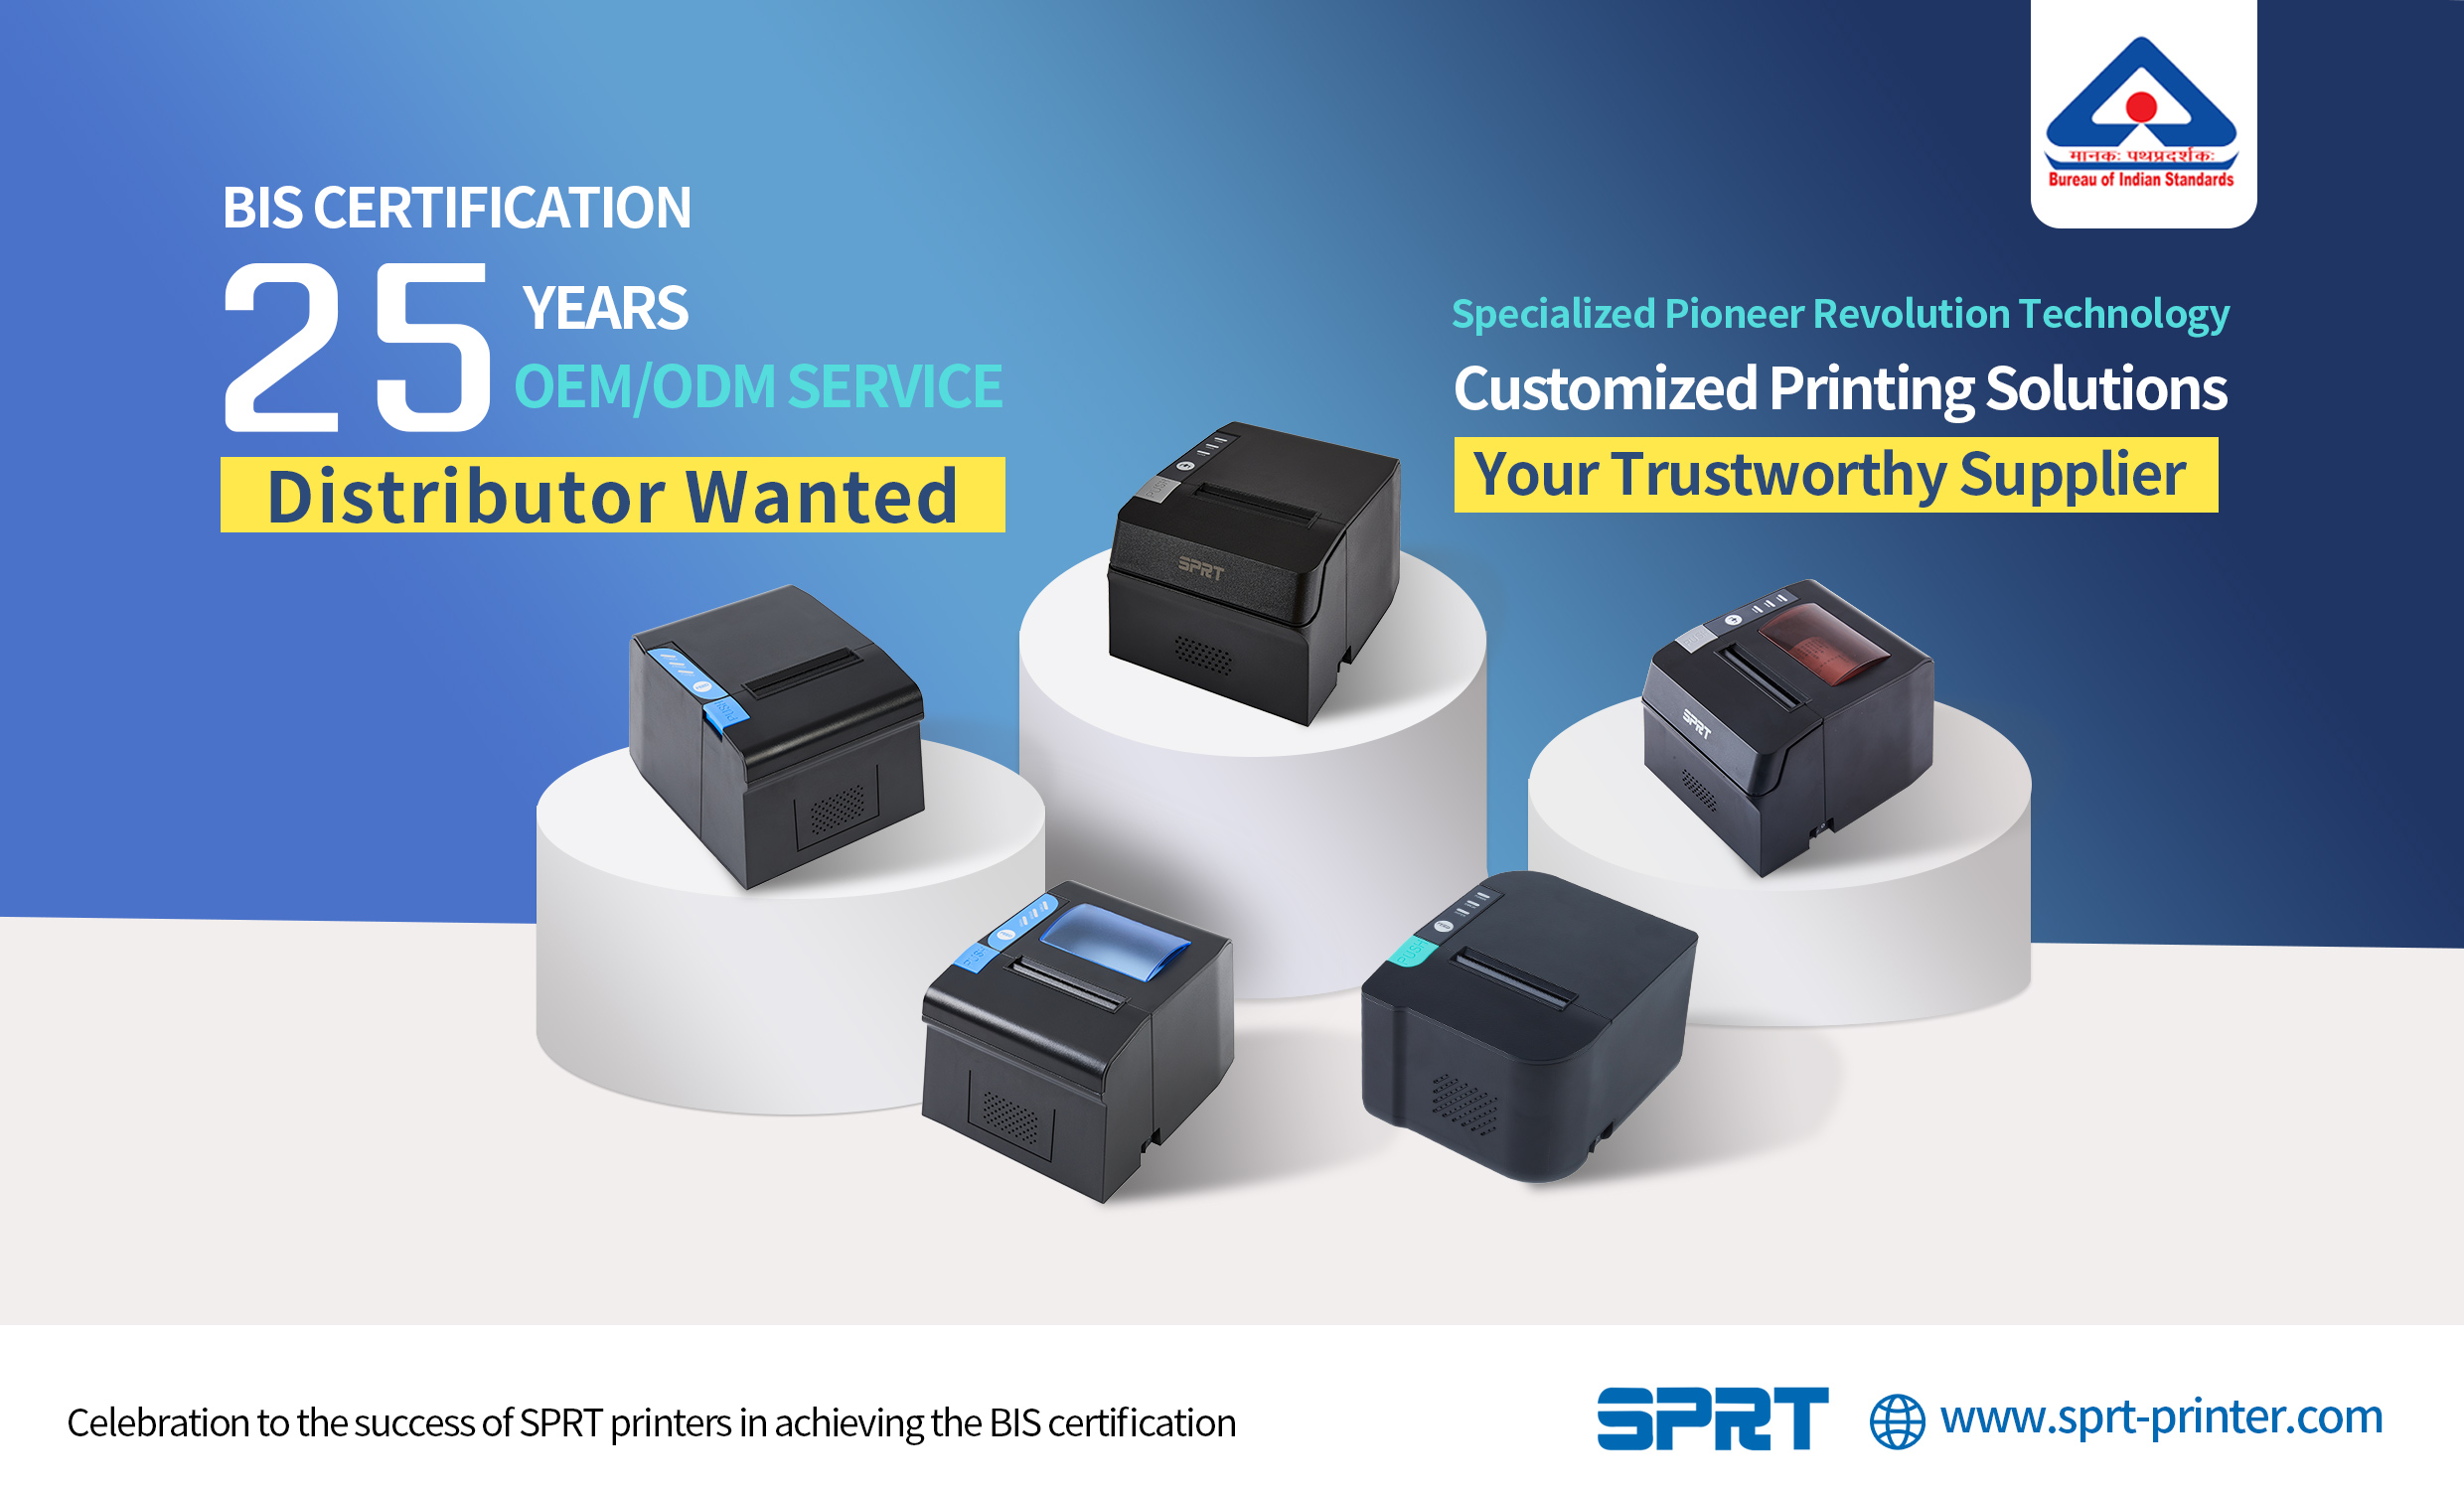 बीआईएस प्रमाणन प्राप्त करने में एसपीआरटी प्रिंटर की सफलता का जश्न